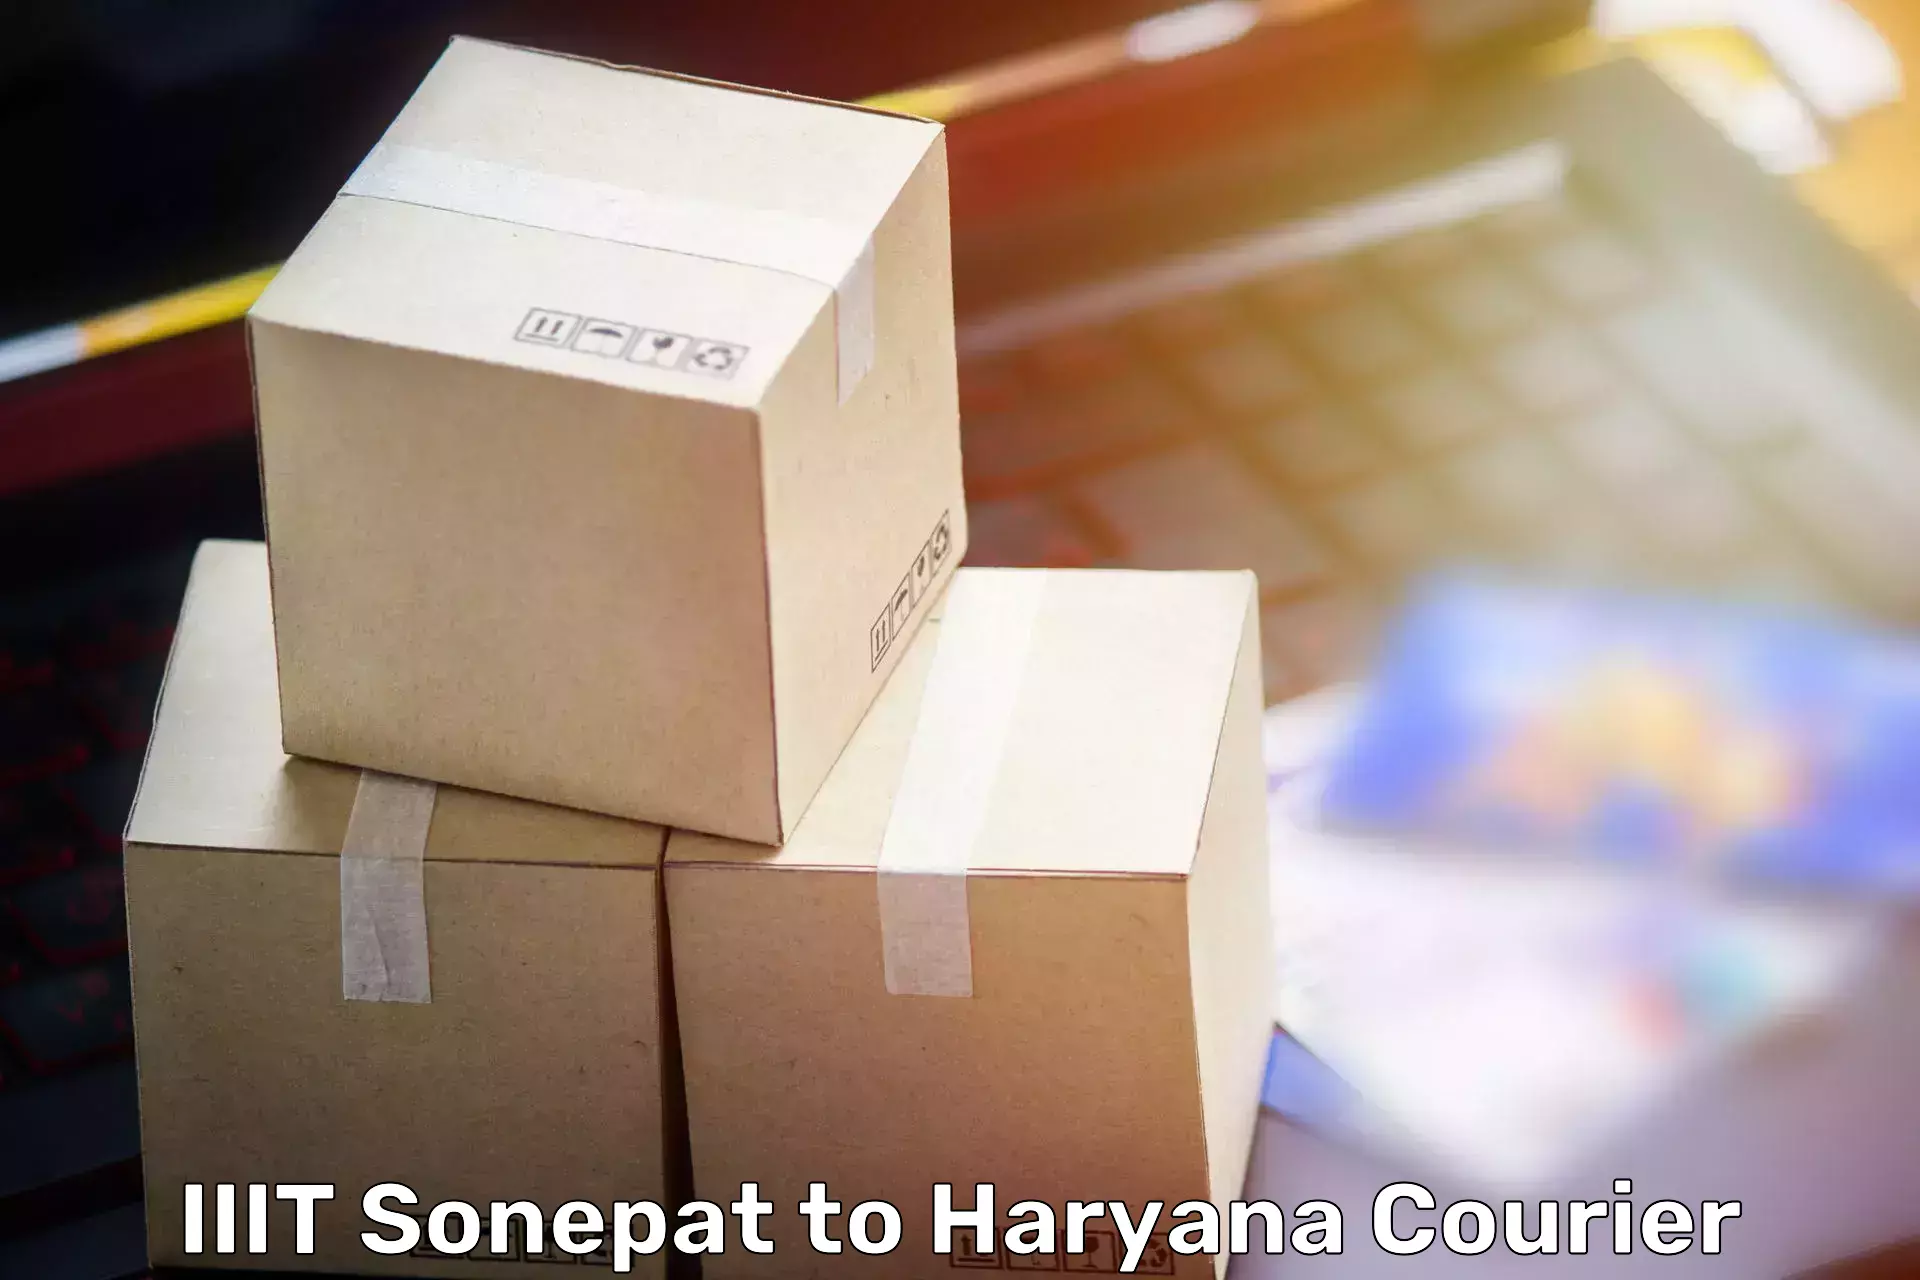 Home goods moving company IIIT Sonepat to Kurukshetra University